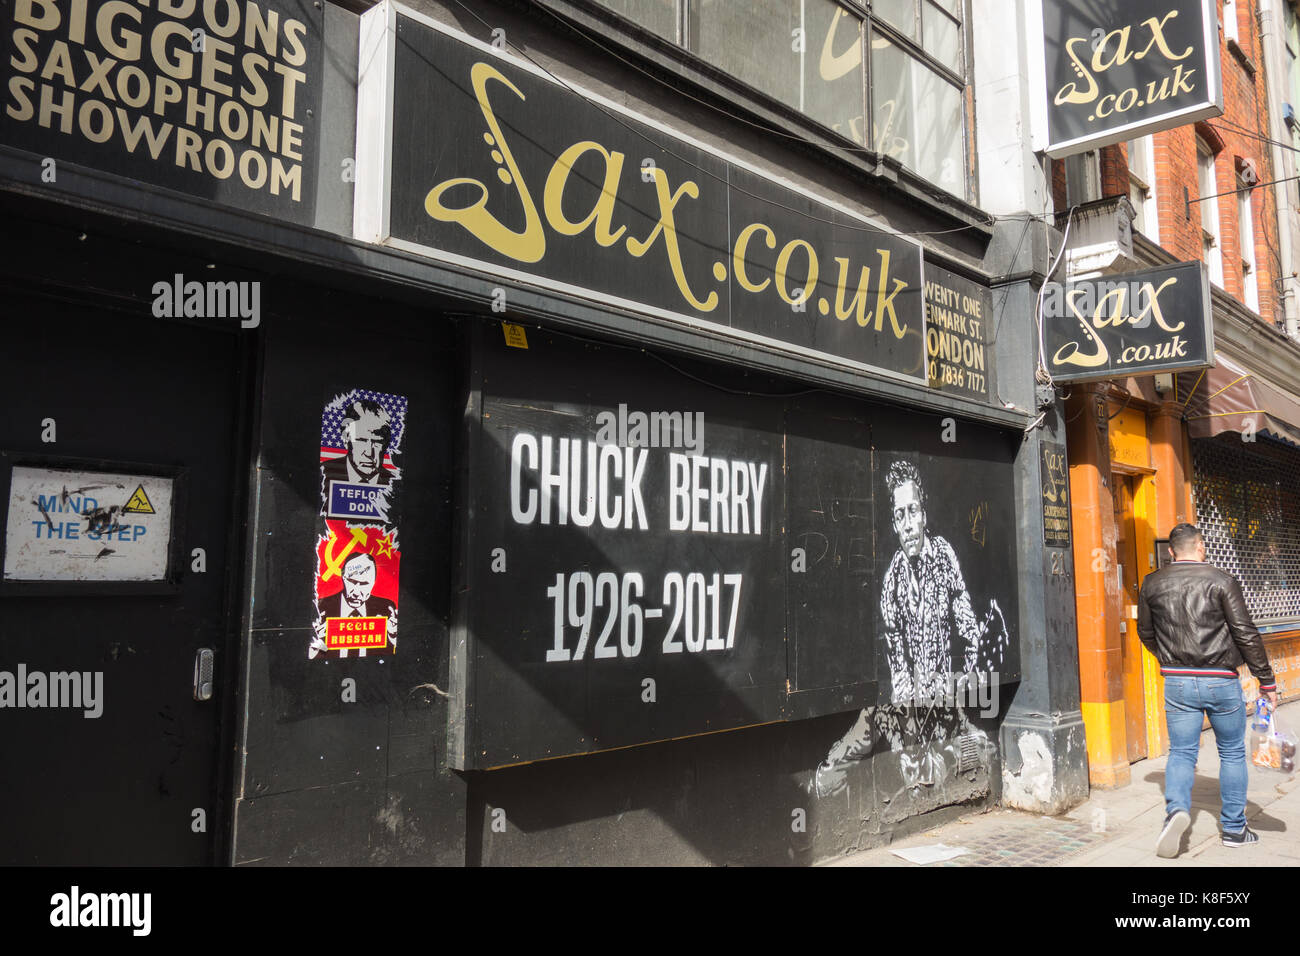 Ein Wandbild auf Dänemark Straße feiert die Gründung der Vater von Rock und Roll, Charles Edward Anderson Berry (AKA Chuck Berry). Stockfoto